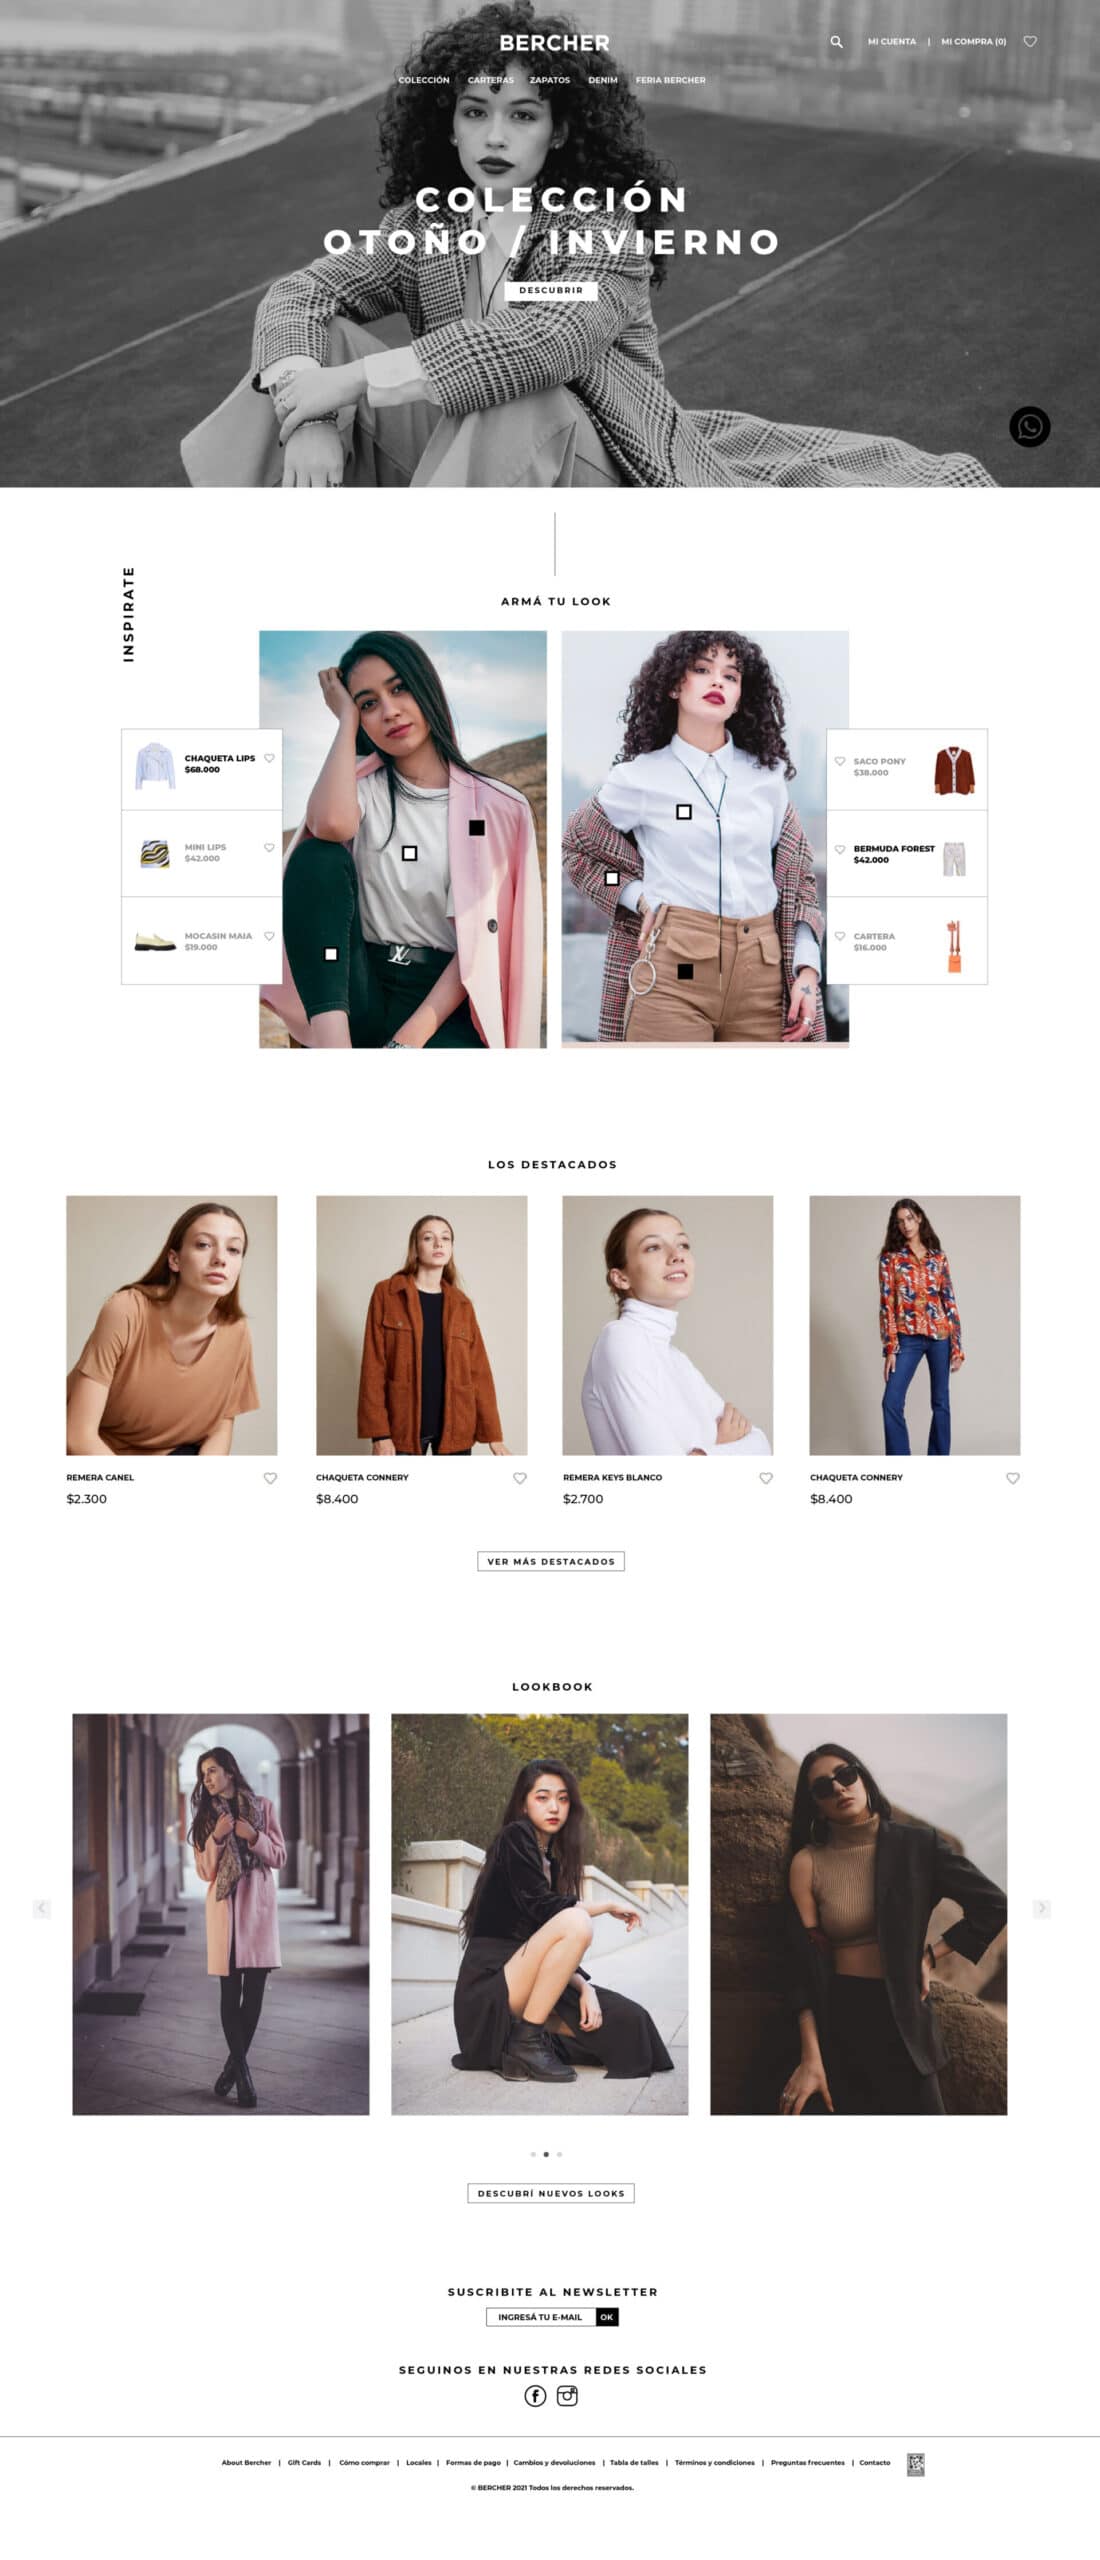 Diseño web de marca de ropa en Buenos Aires